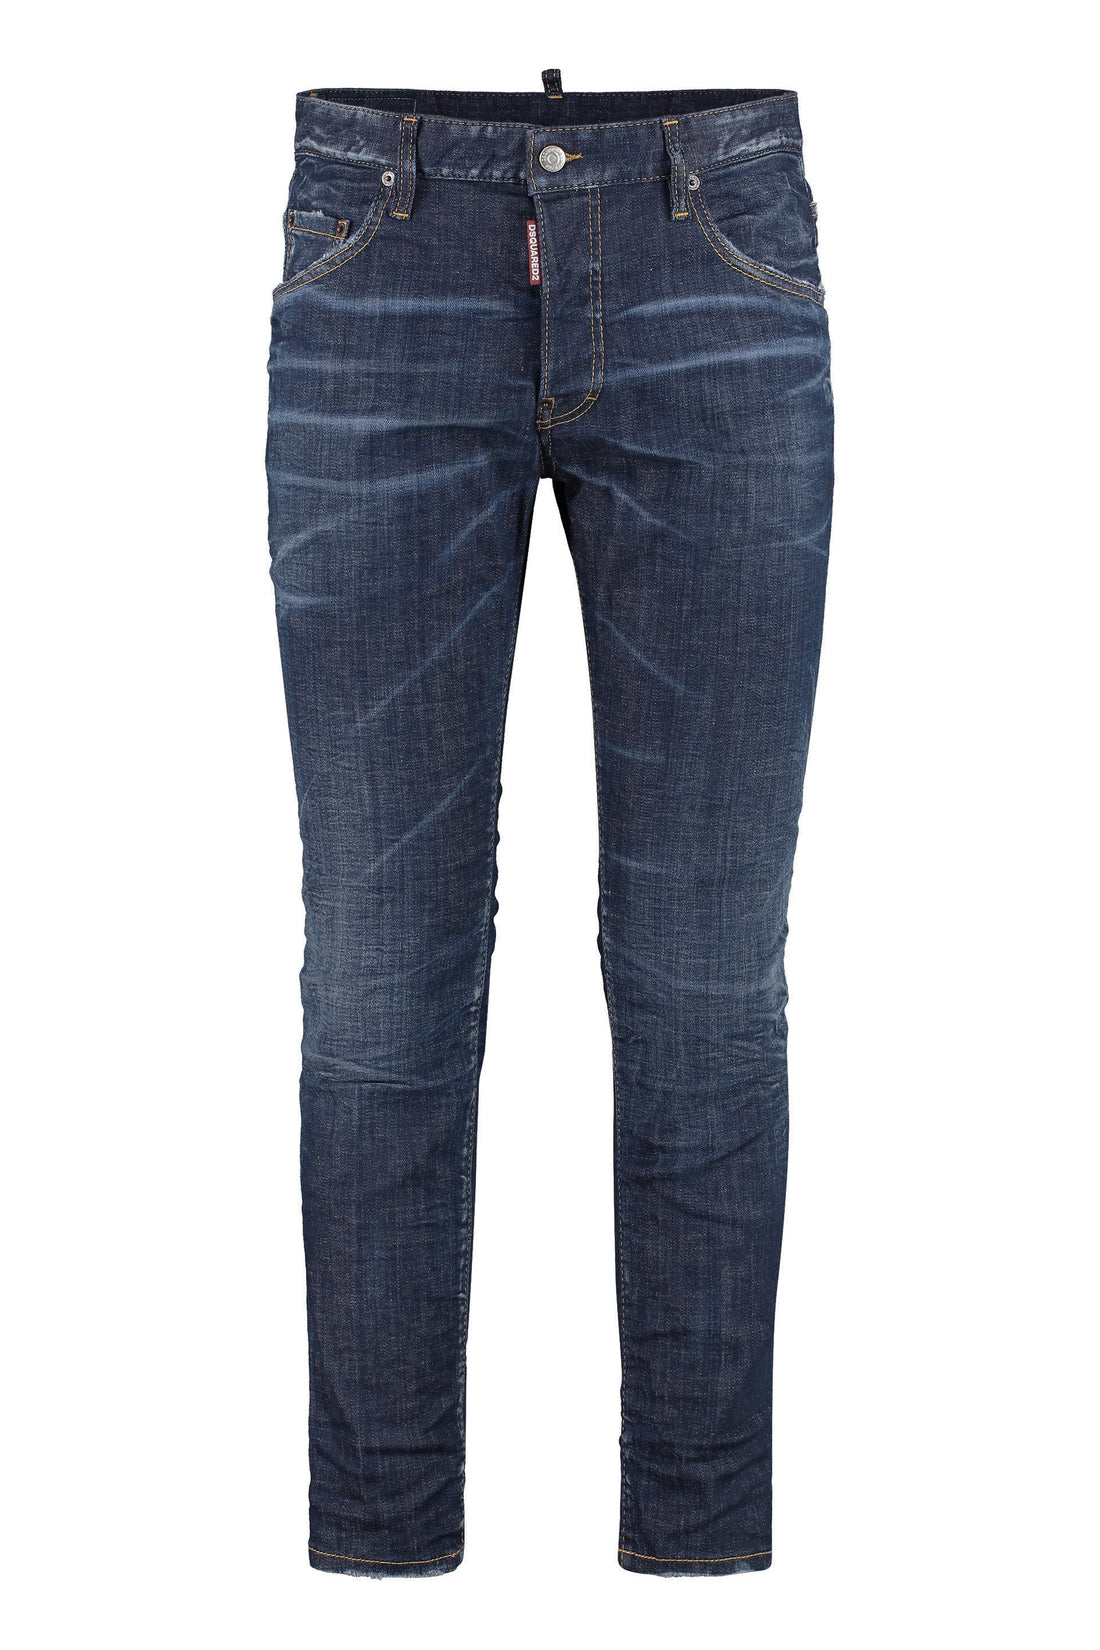 Dsquared2-OUTLET-SALE-Skater skinny jeans-ARCHIVIST